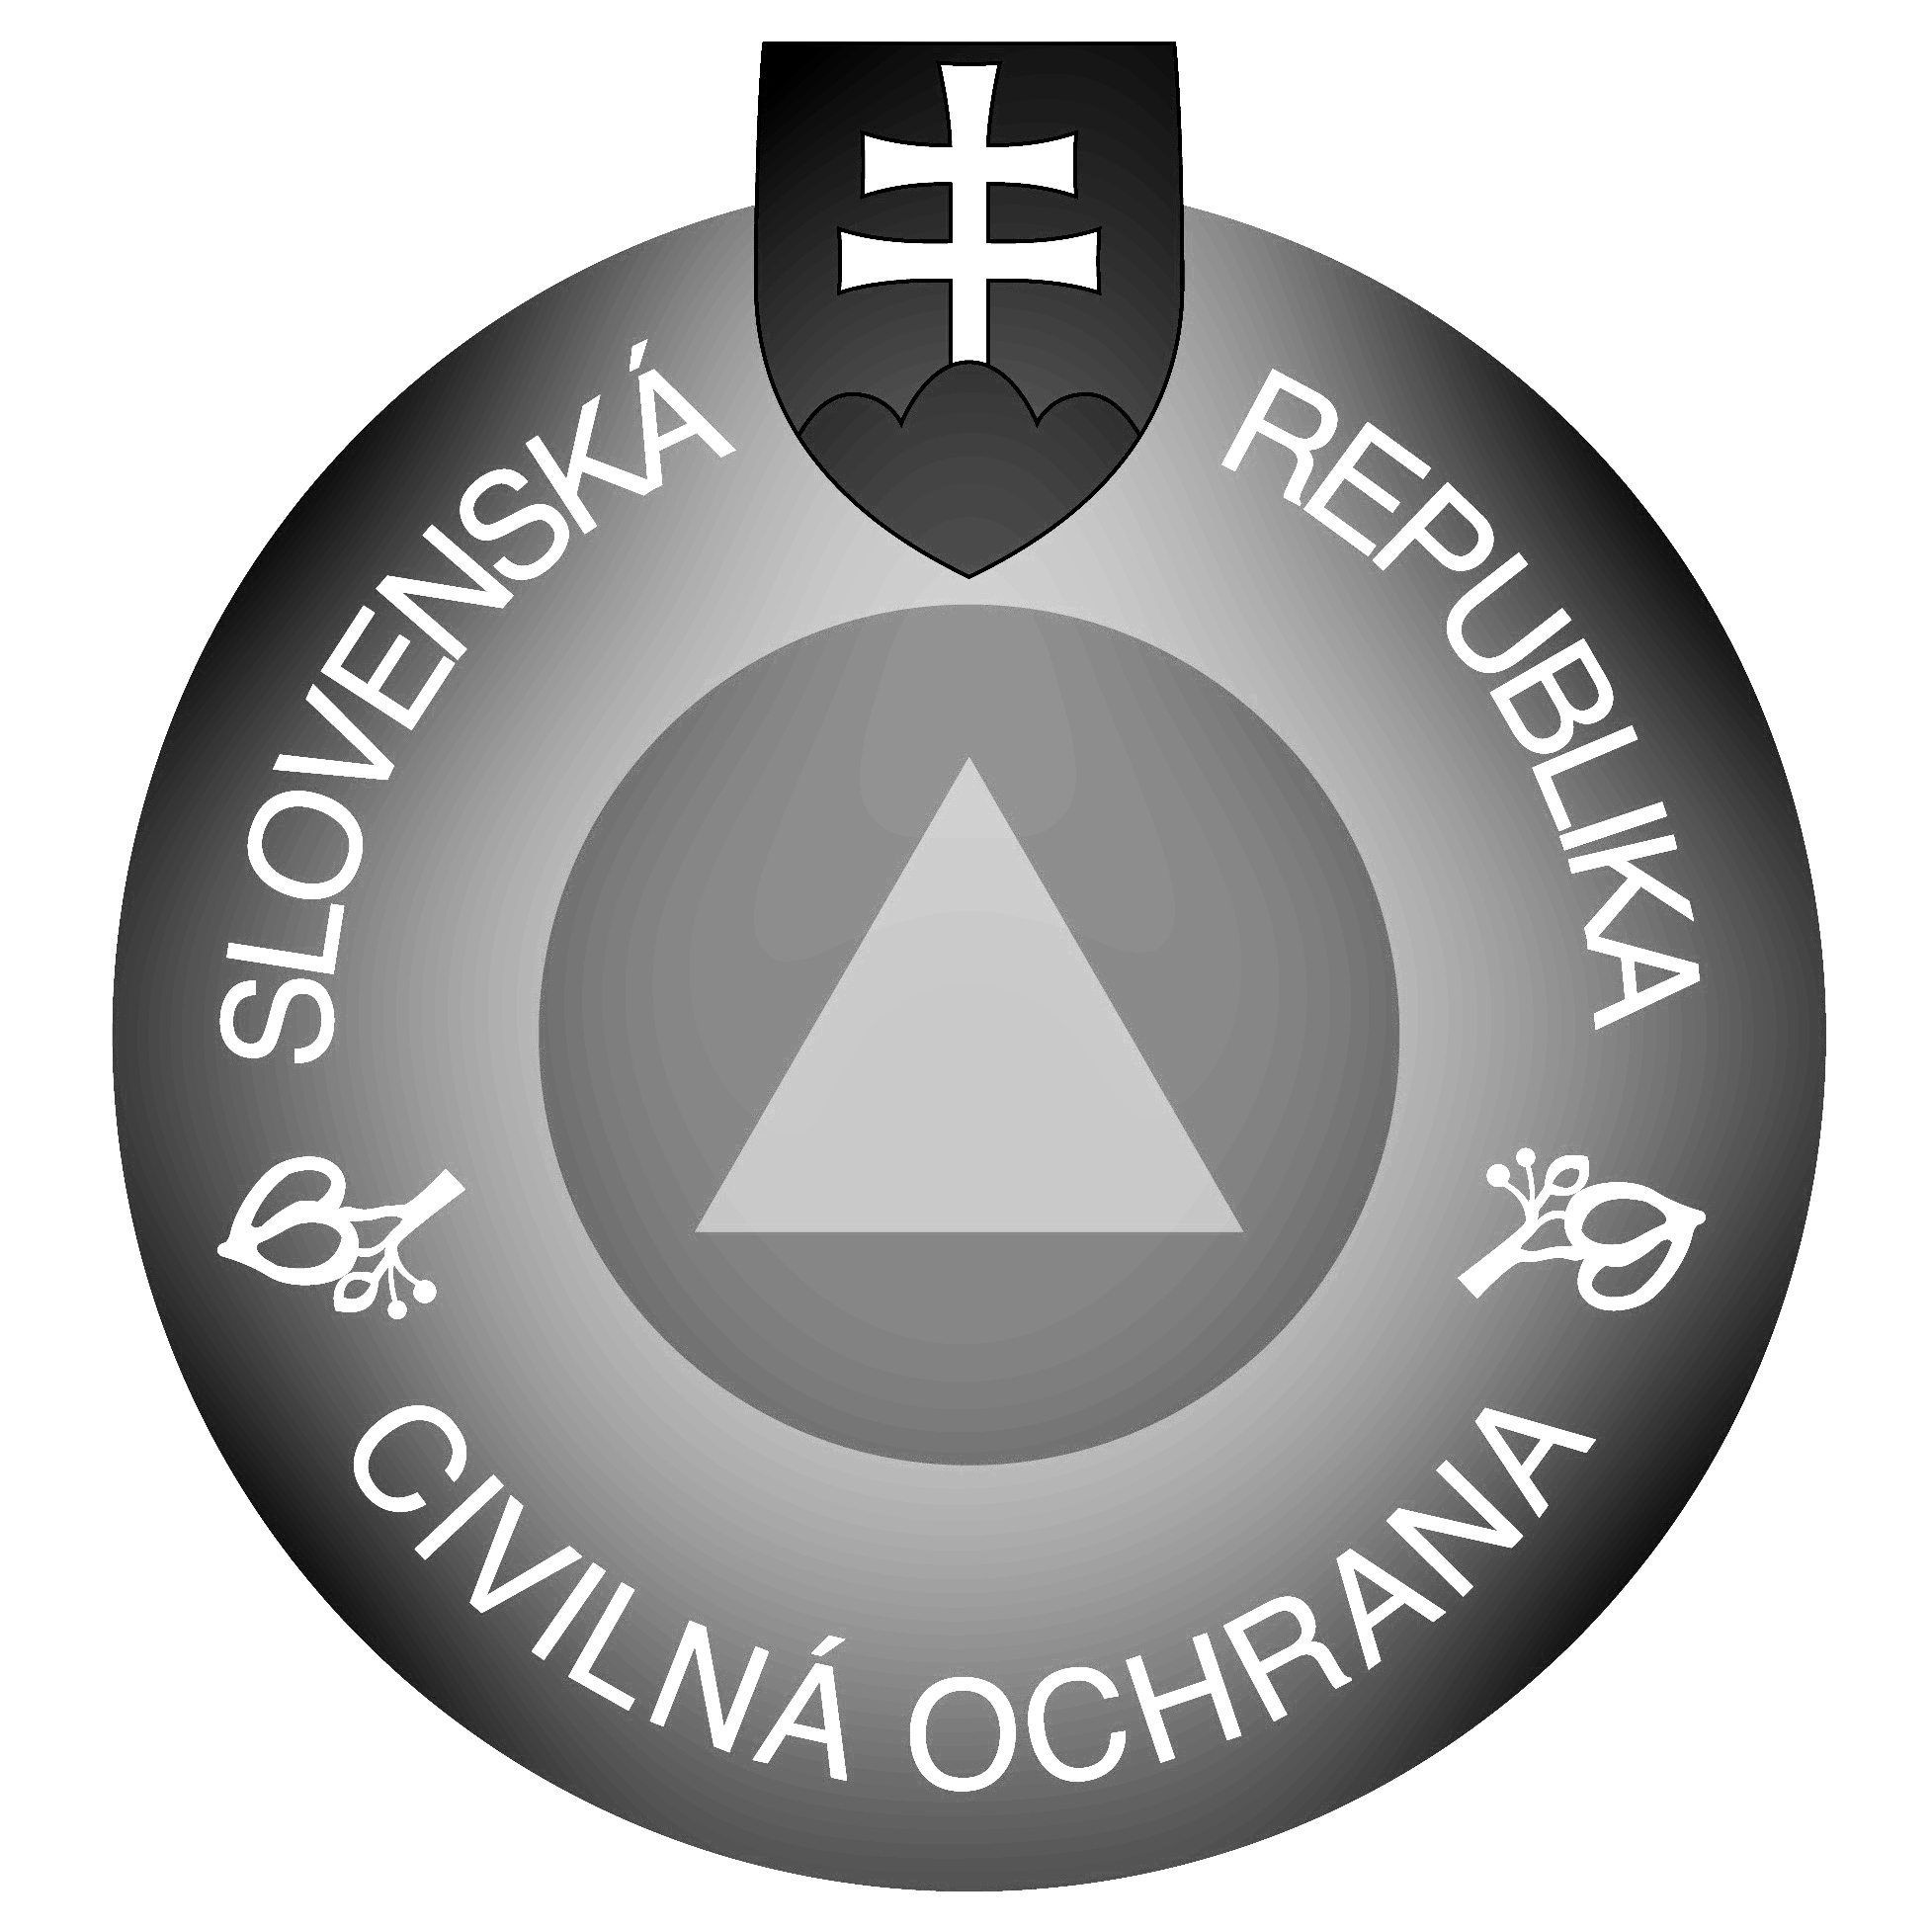 civilna_ochrana_cb